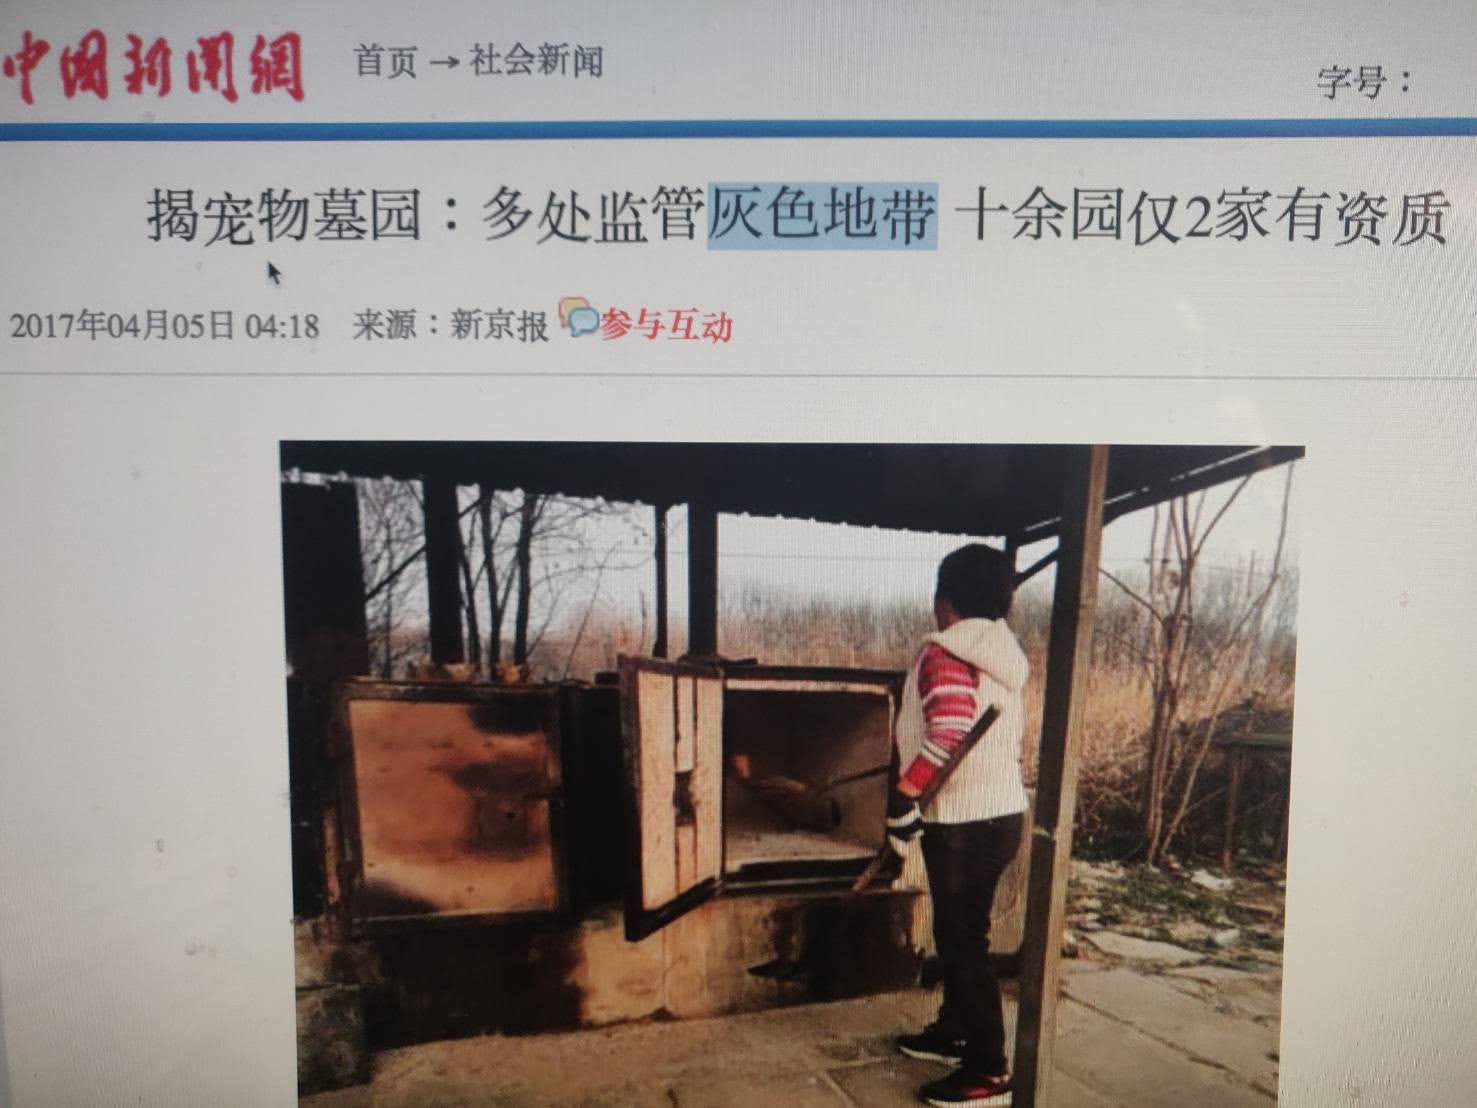 中國購地一律有使用期限，新京報指宠物墓地多無审批，租期一到或被征地，宠物安葬无保障。